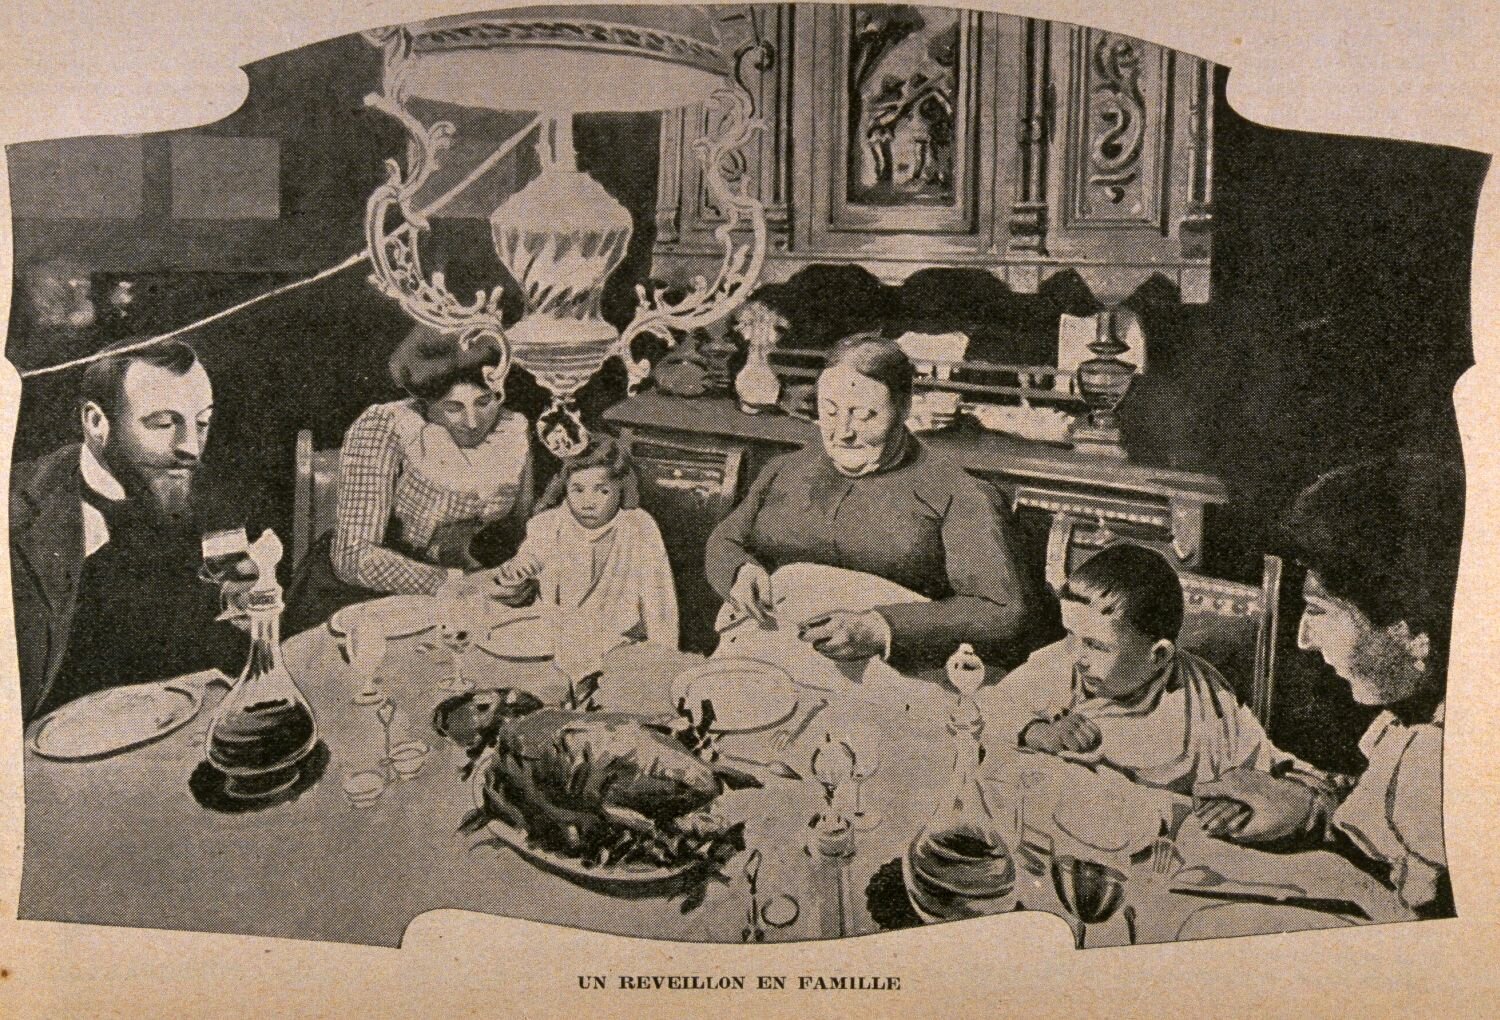 1904 image of a "Family réveillon" (BAnQ)